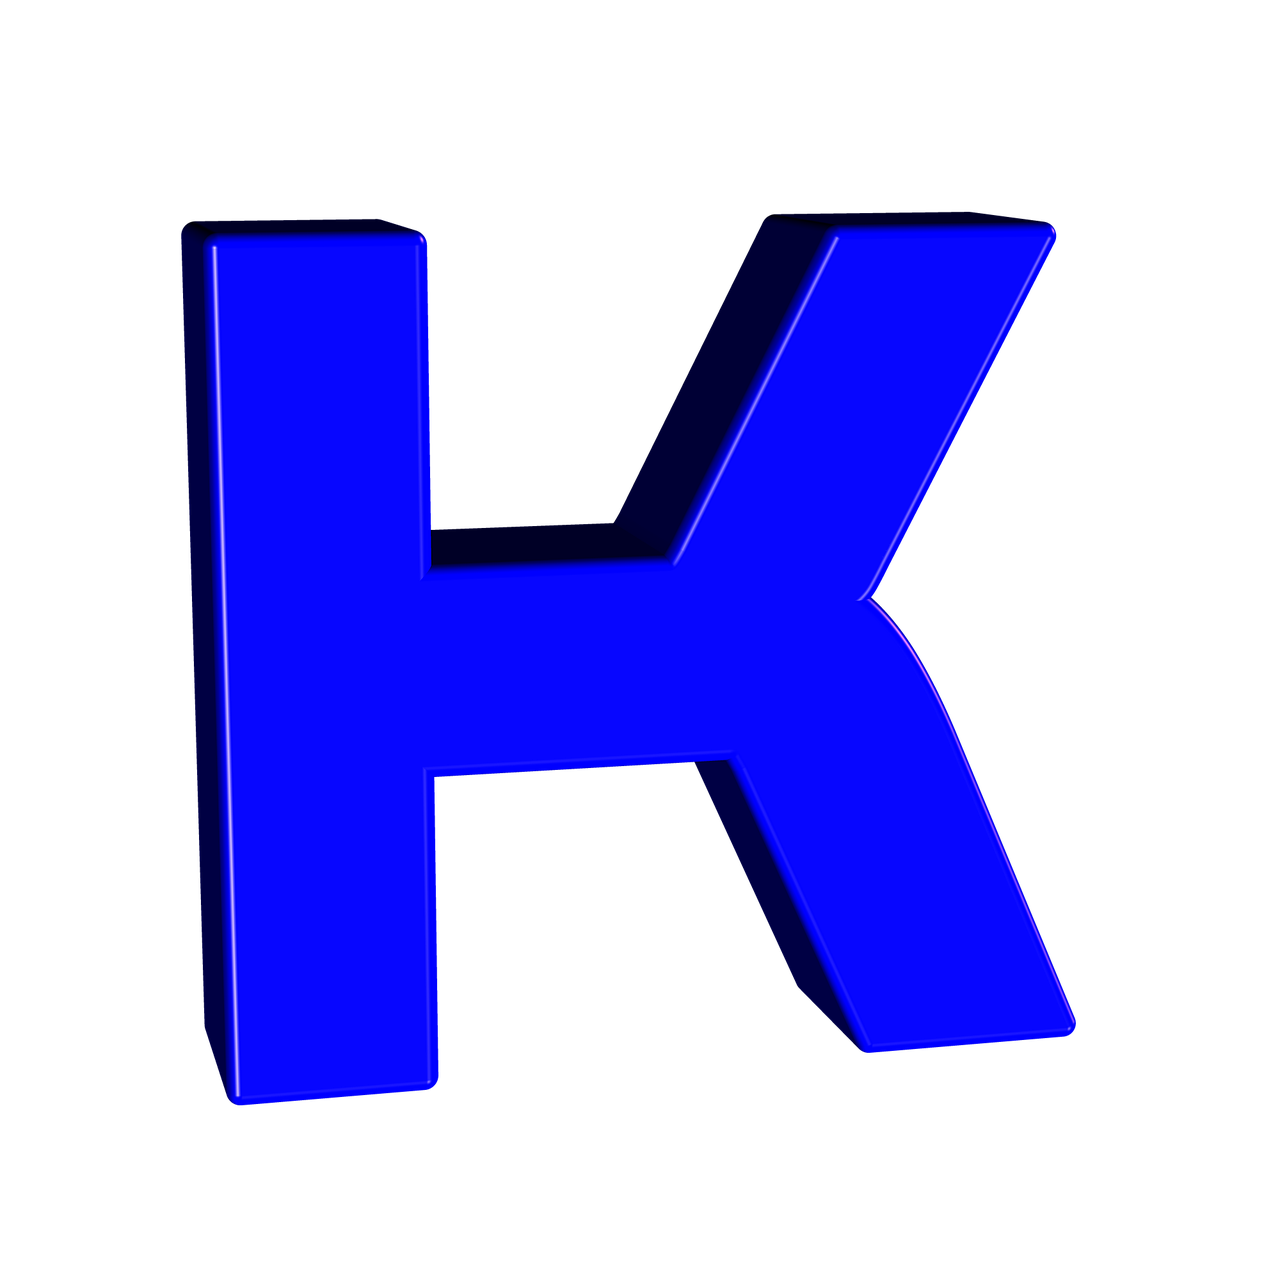 K channel. Алфавит и буквы. Буквы синие. Буквы голубые. Буквы синего цвета.